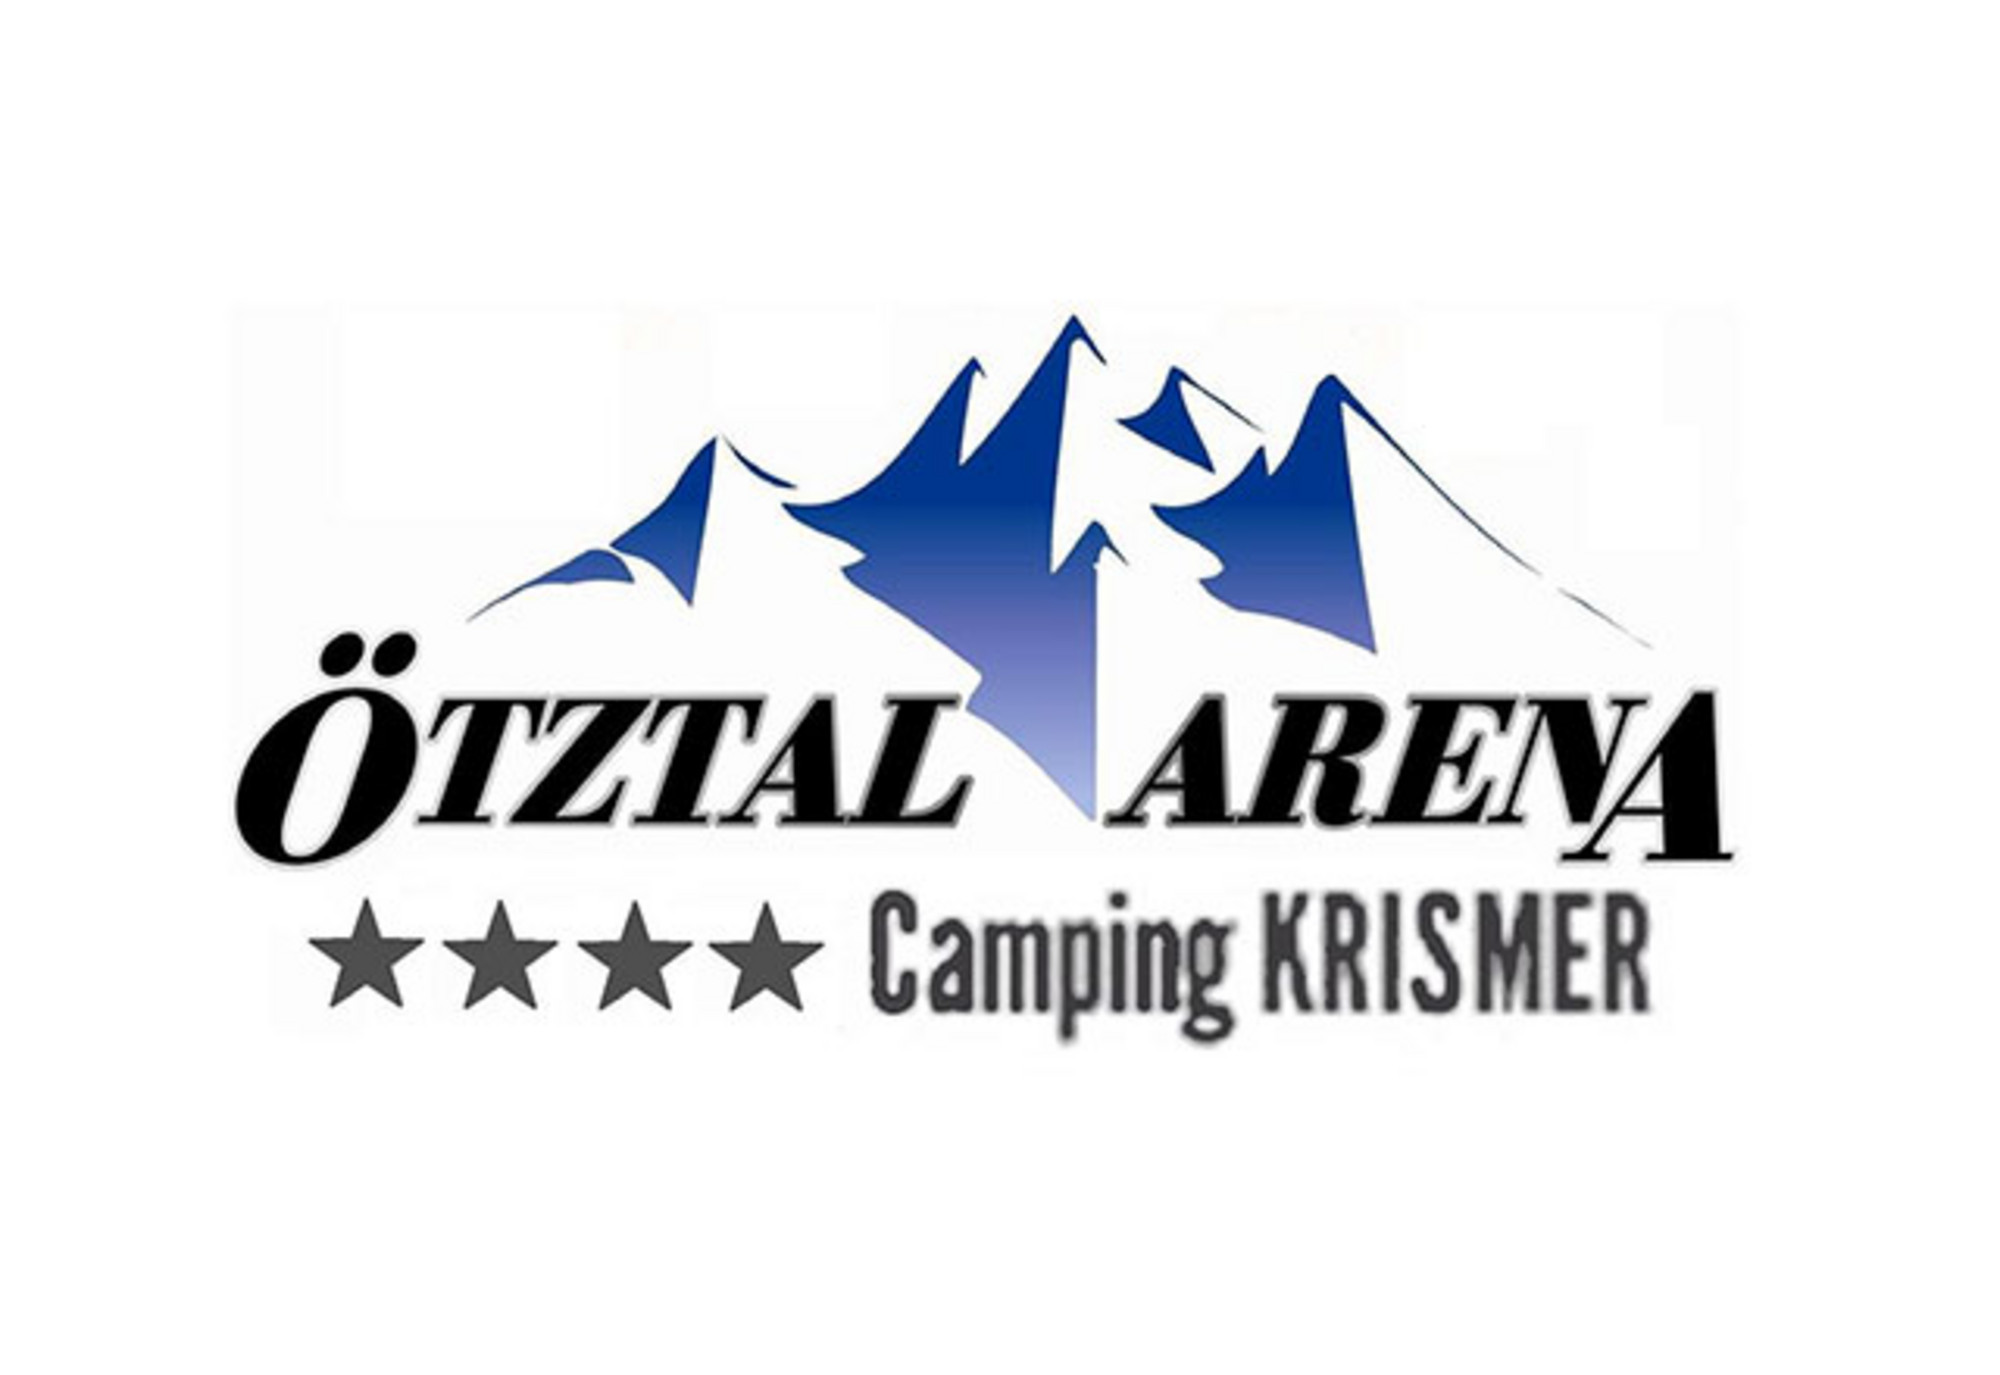 Camping Krismer